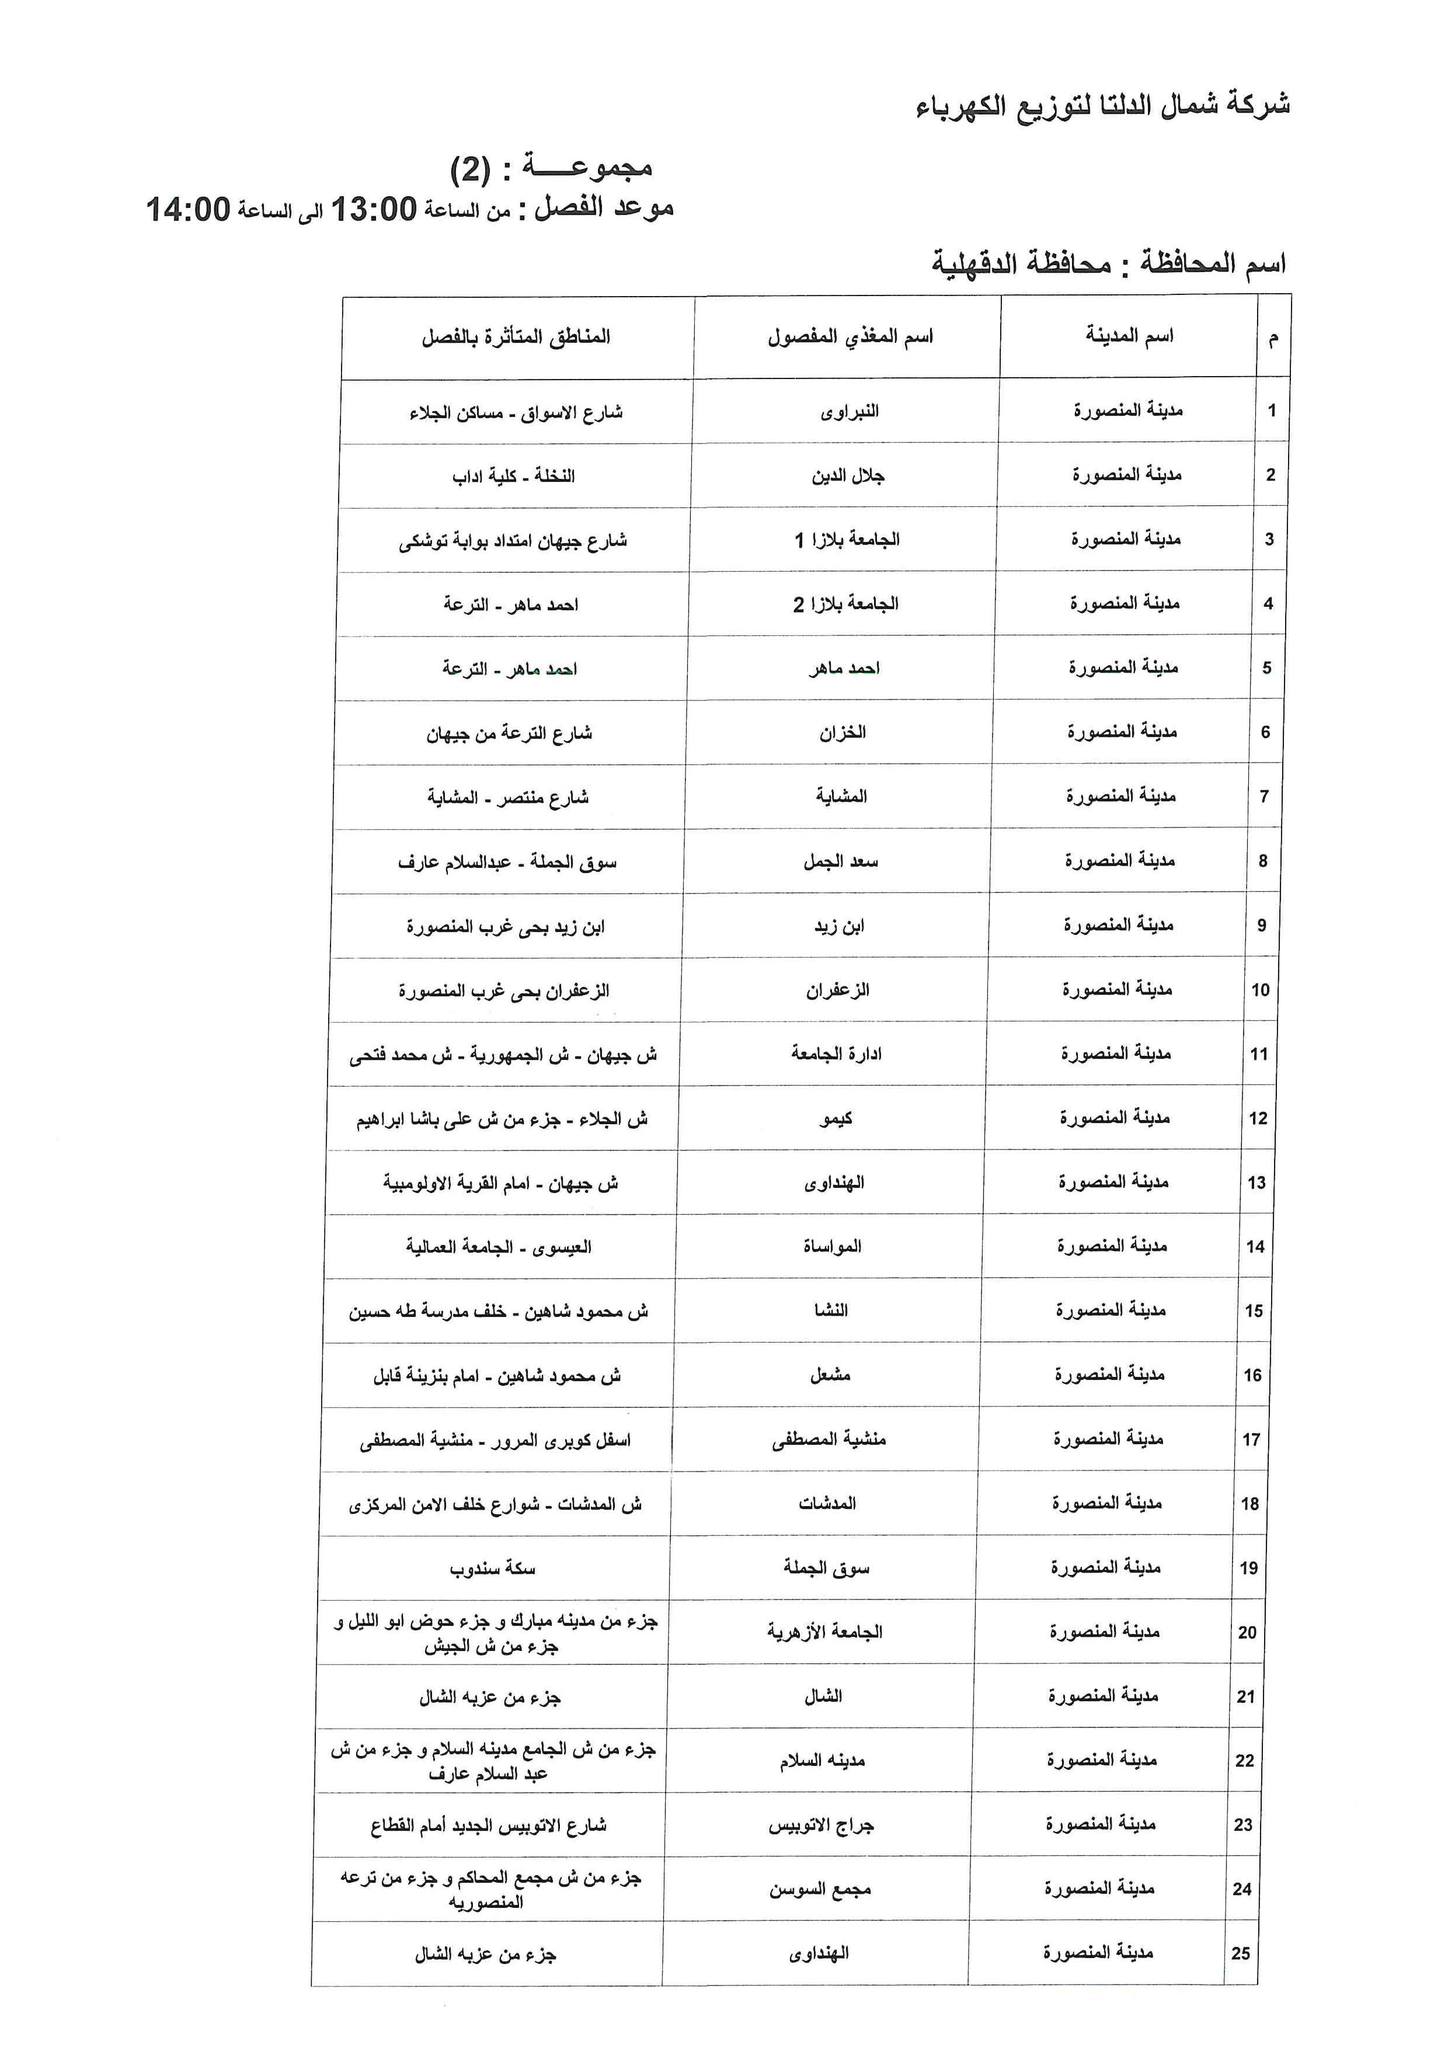 الإعلان عن خطة تخفيف أحمال الكهرباء فى محافظة الدقهلية 3